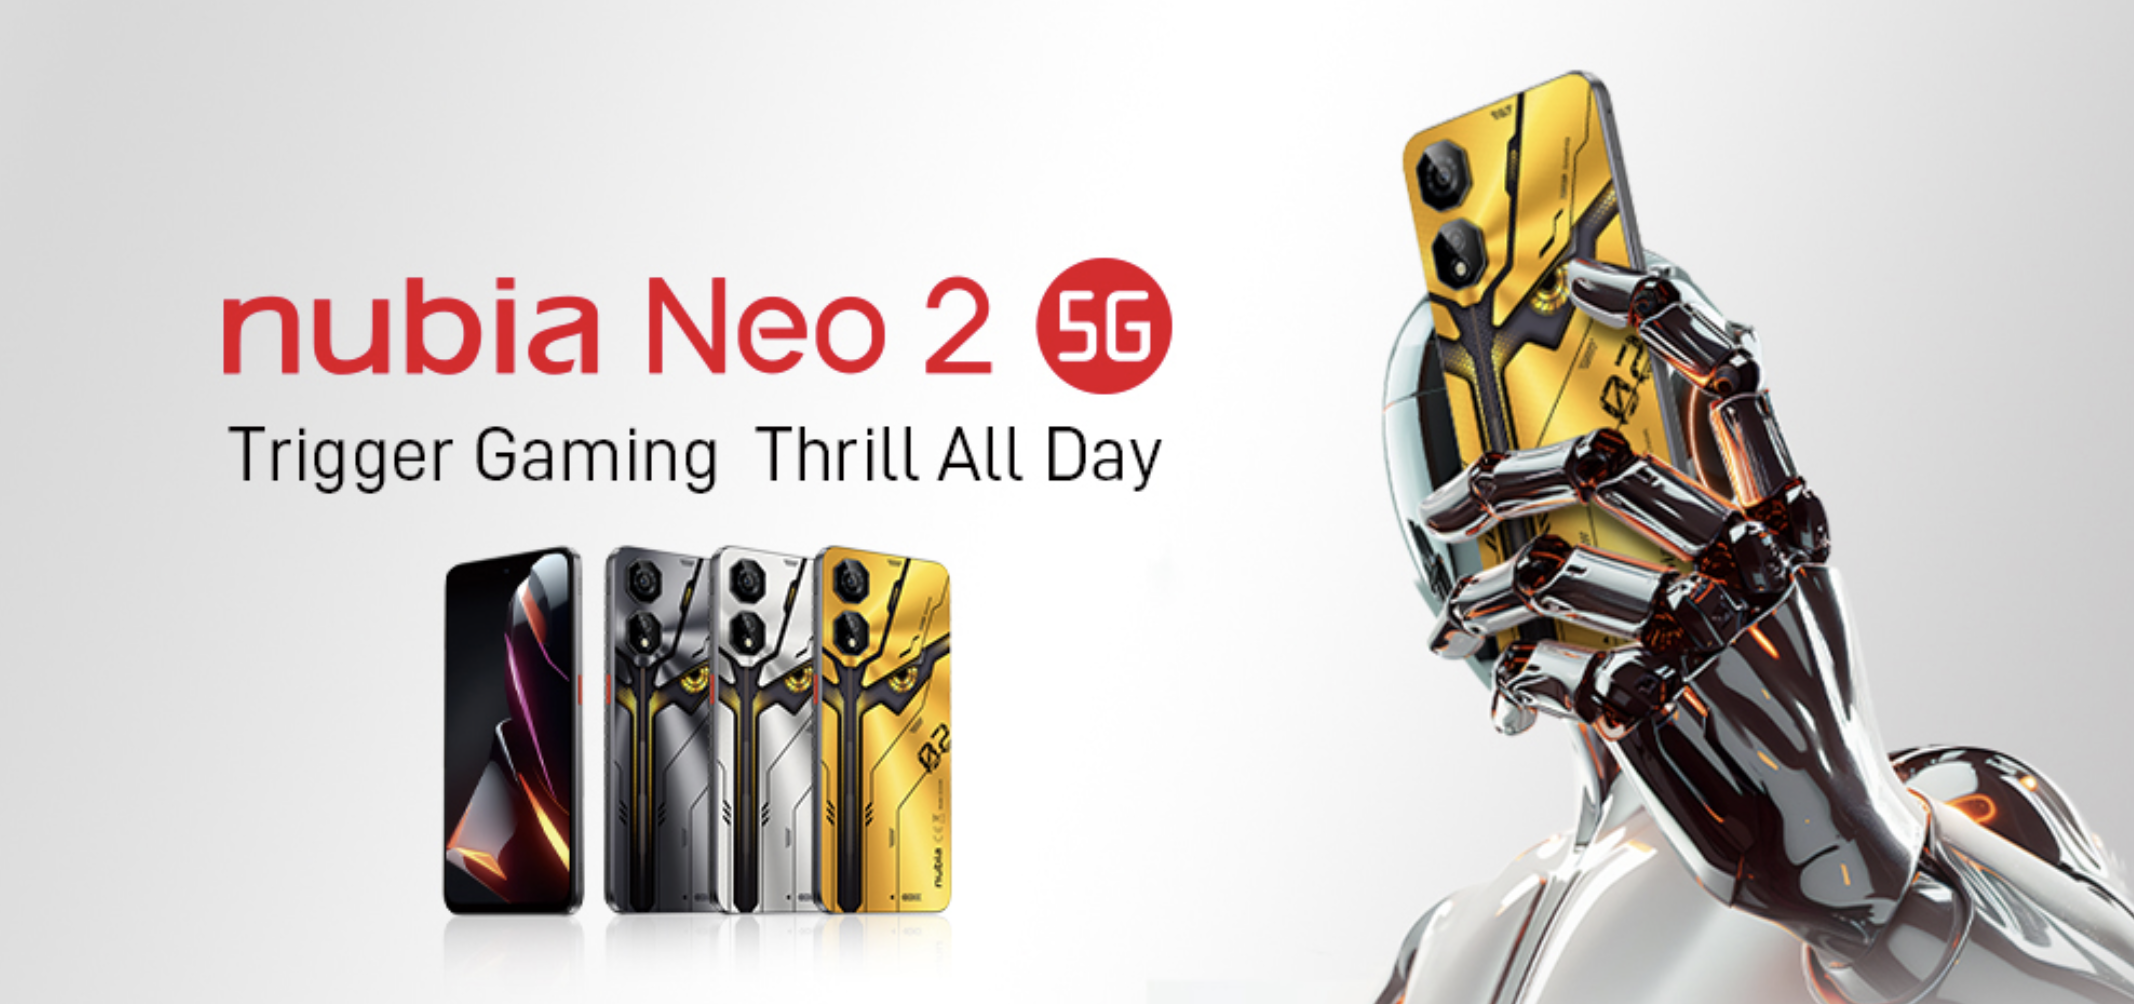 nubia Neo 2 5G: ein Gaming-Smartphone mit seitlichen Triggern, 120Hz-Bildschirm und 6000mAh-Akku für 199$